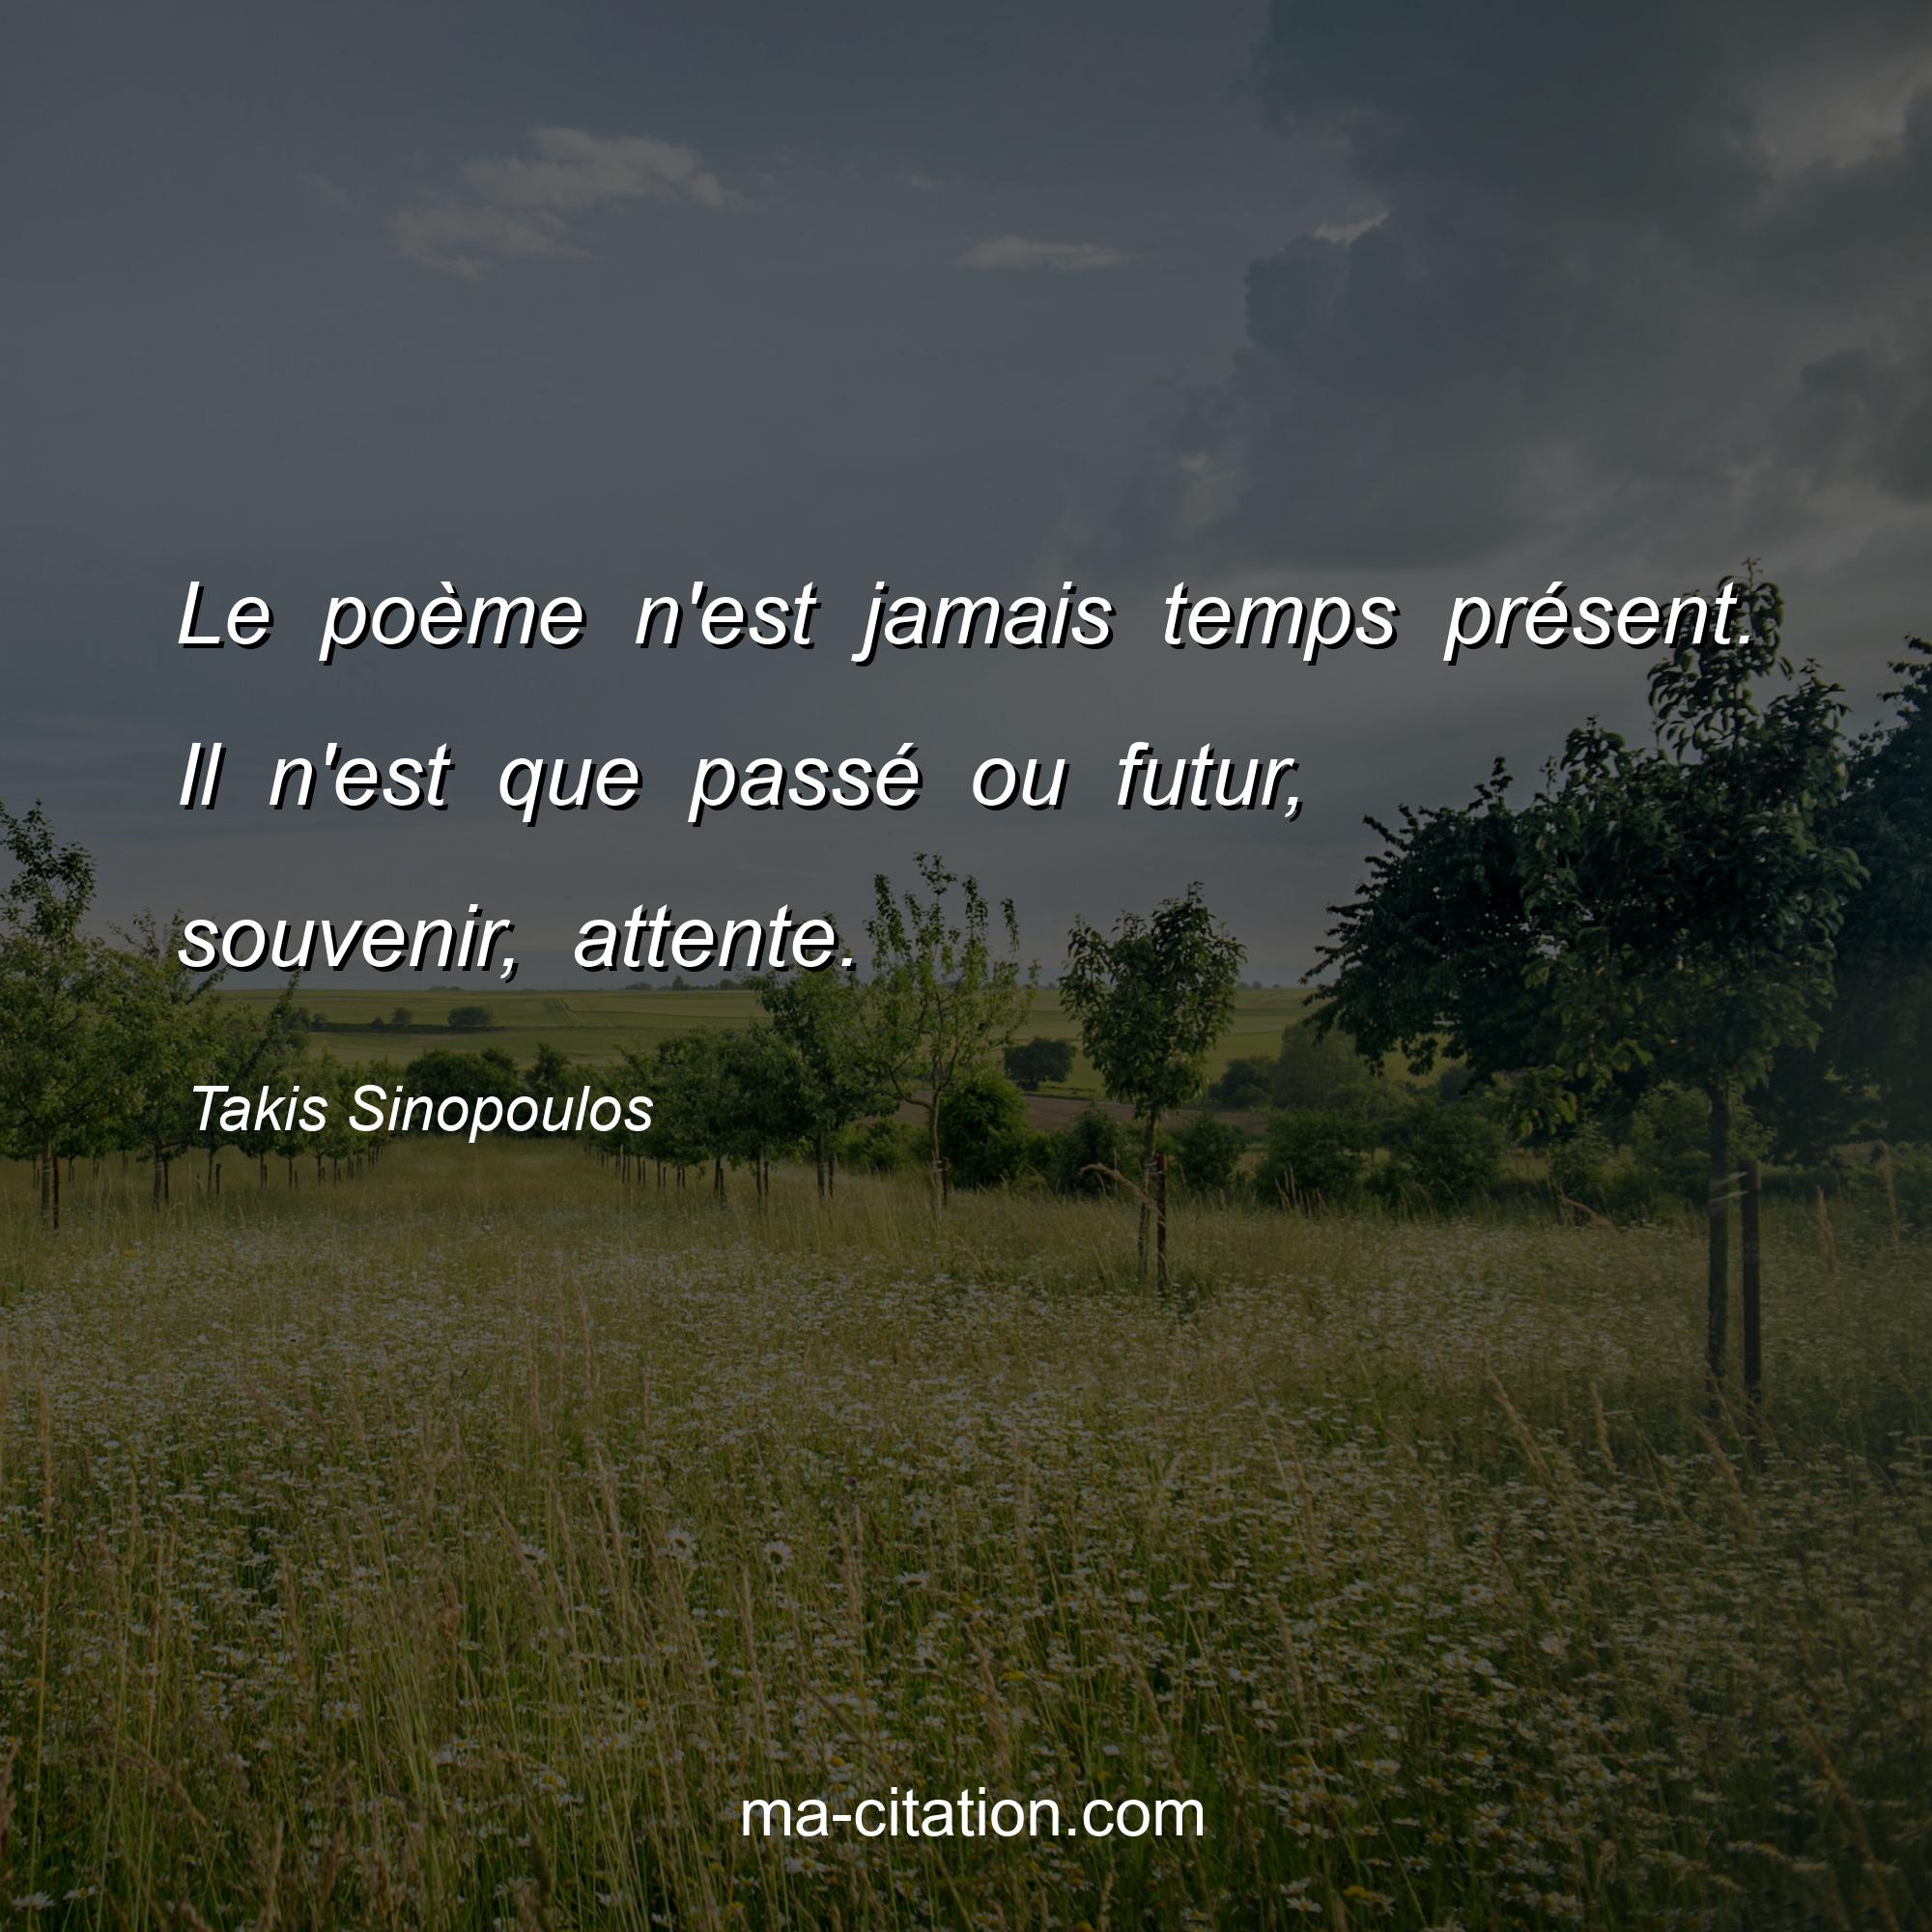 Takis Sinopoulos : Le poème n'est jamais temps présent. Il n'est que passé ou futur, souvenir, attente.